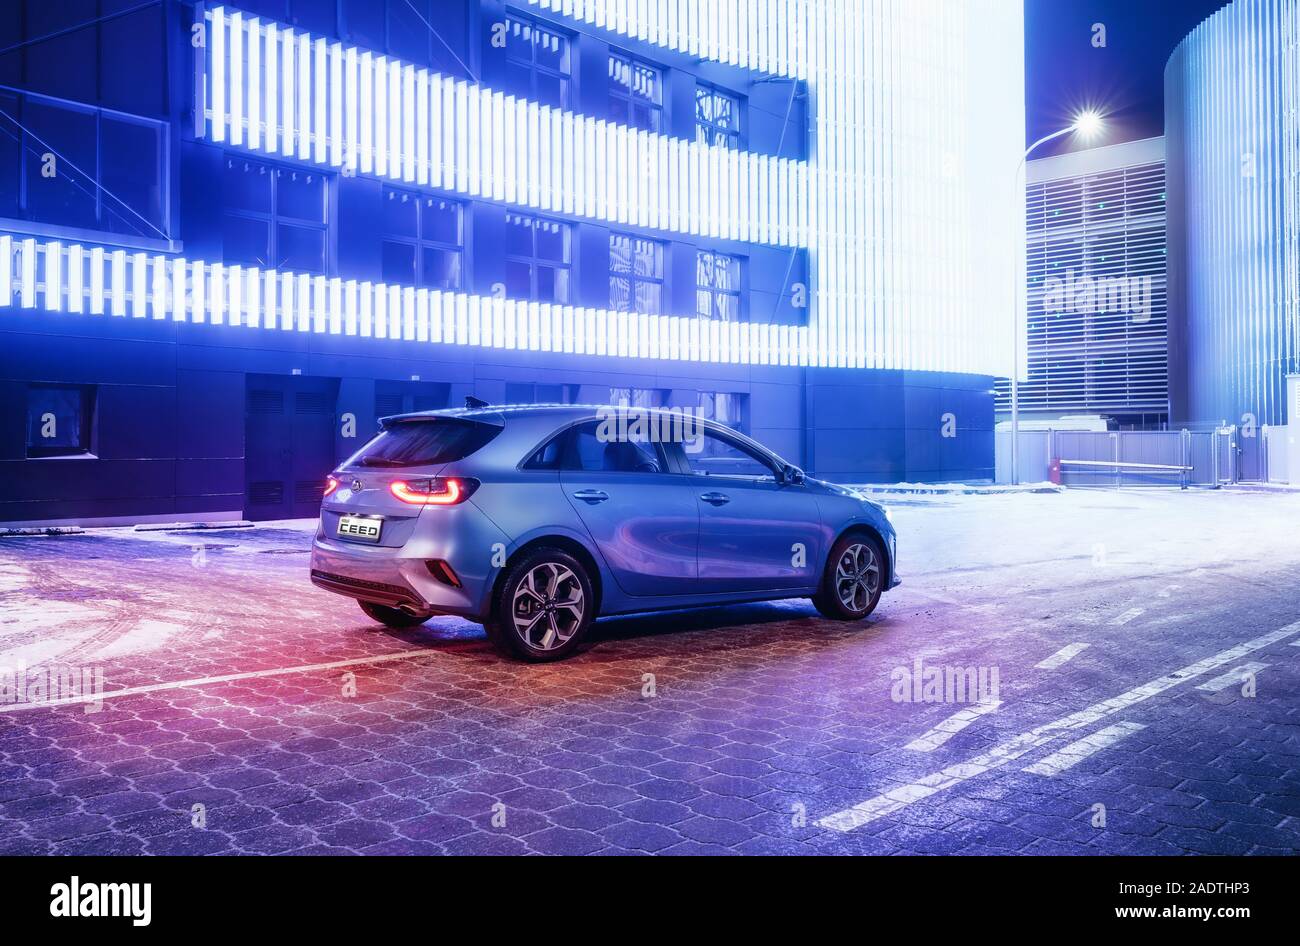 Minsk, Belarus - 26 novembre 2019 : Kia Ceed 2018 voiture sur route enneigée dans nuit ville contre mur avec des lumières de couleur néon Banque D'Images